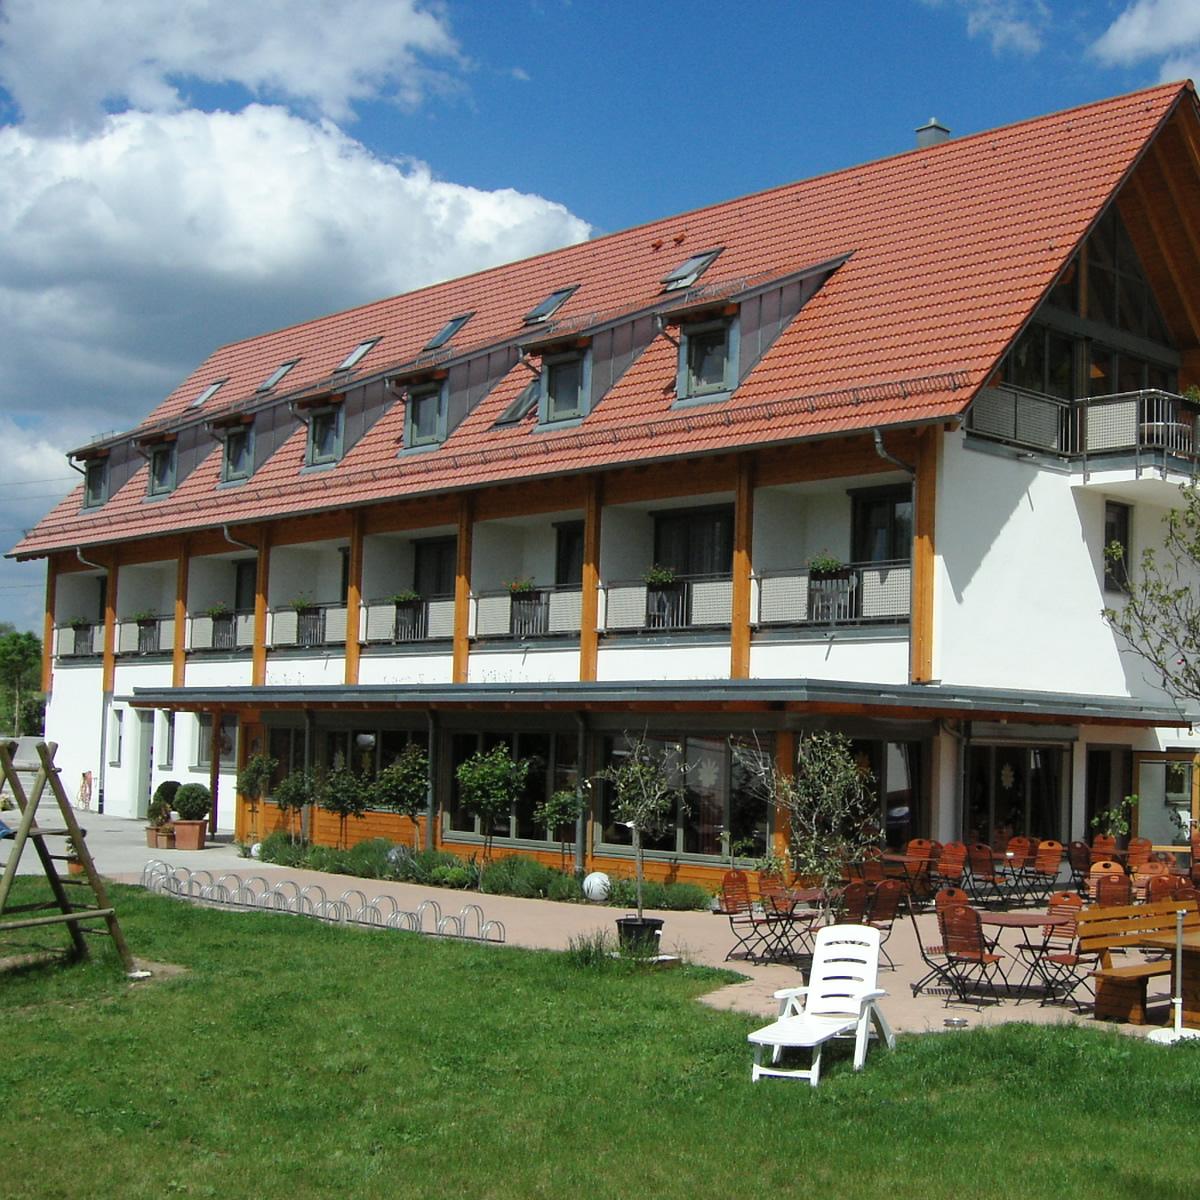 Restaurant "Landhotel Waldheim" in Pliezhausen